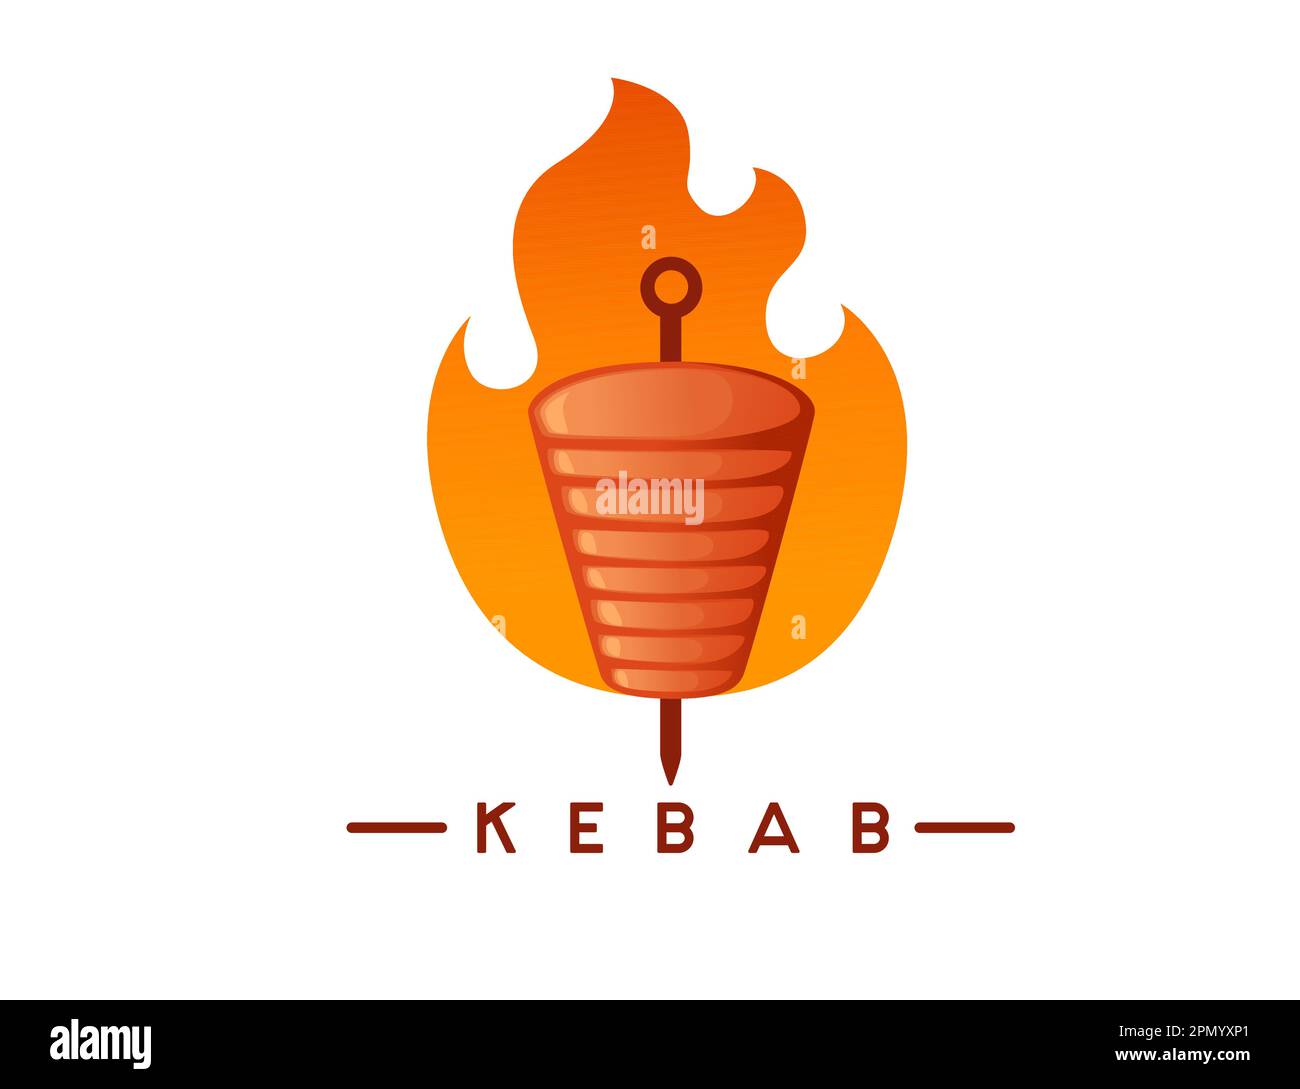 Kebab viande grillée avec brochette et logo du feu dessin vectoriel illustration sur fond blanc Illustration de Vecteur